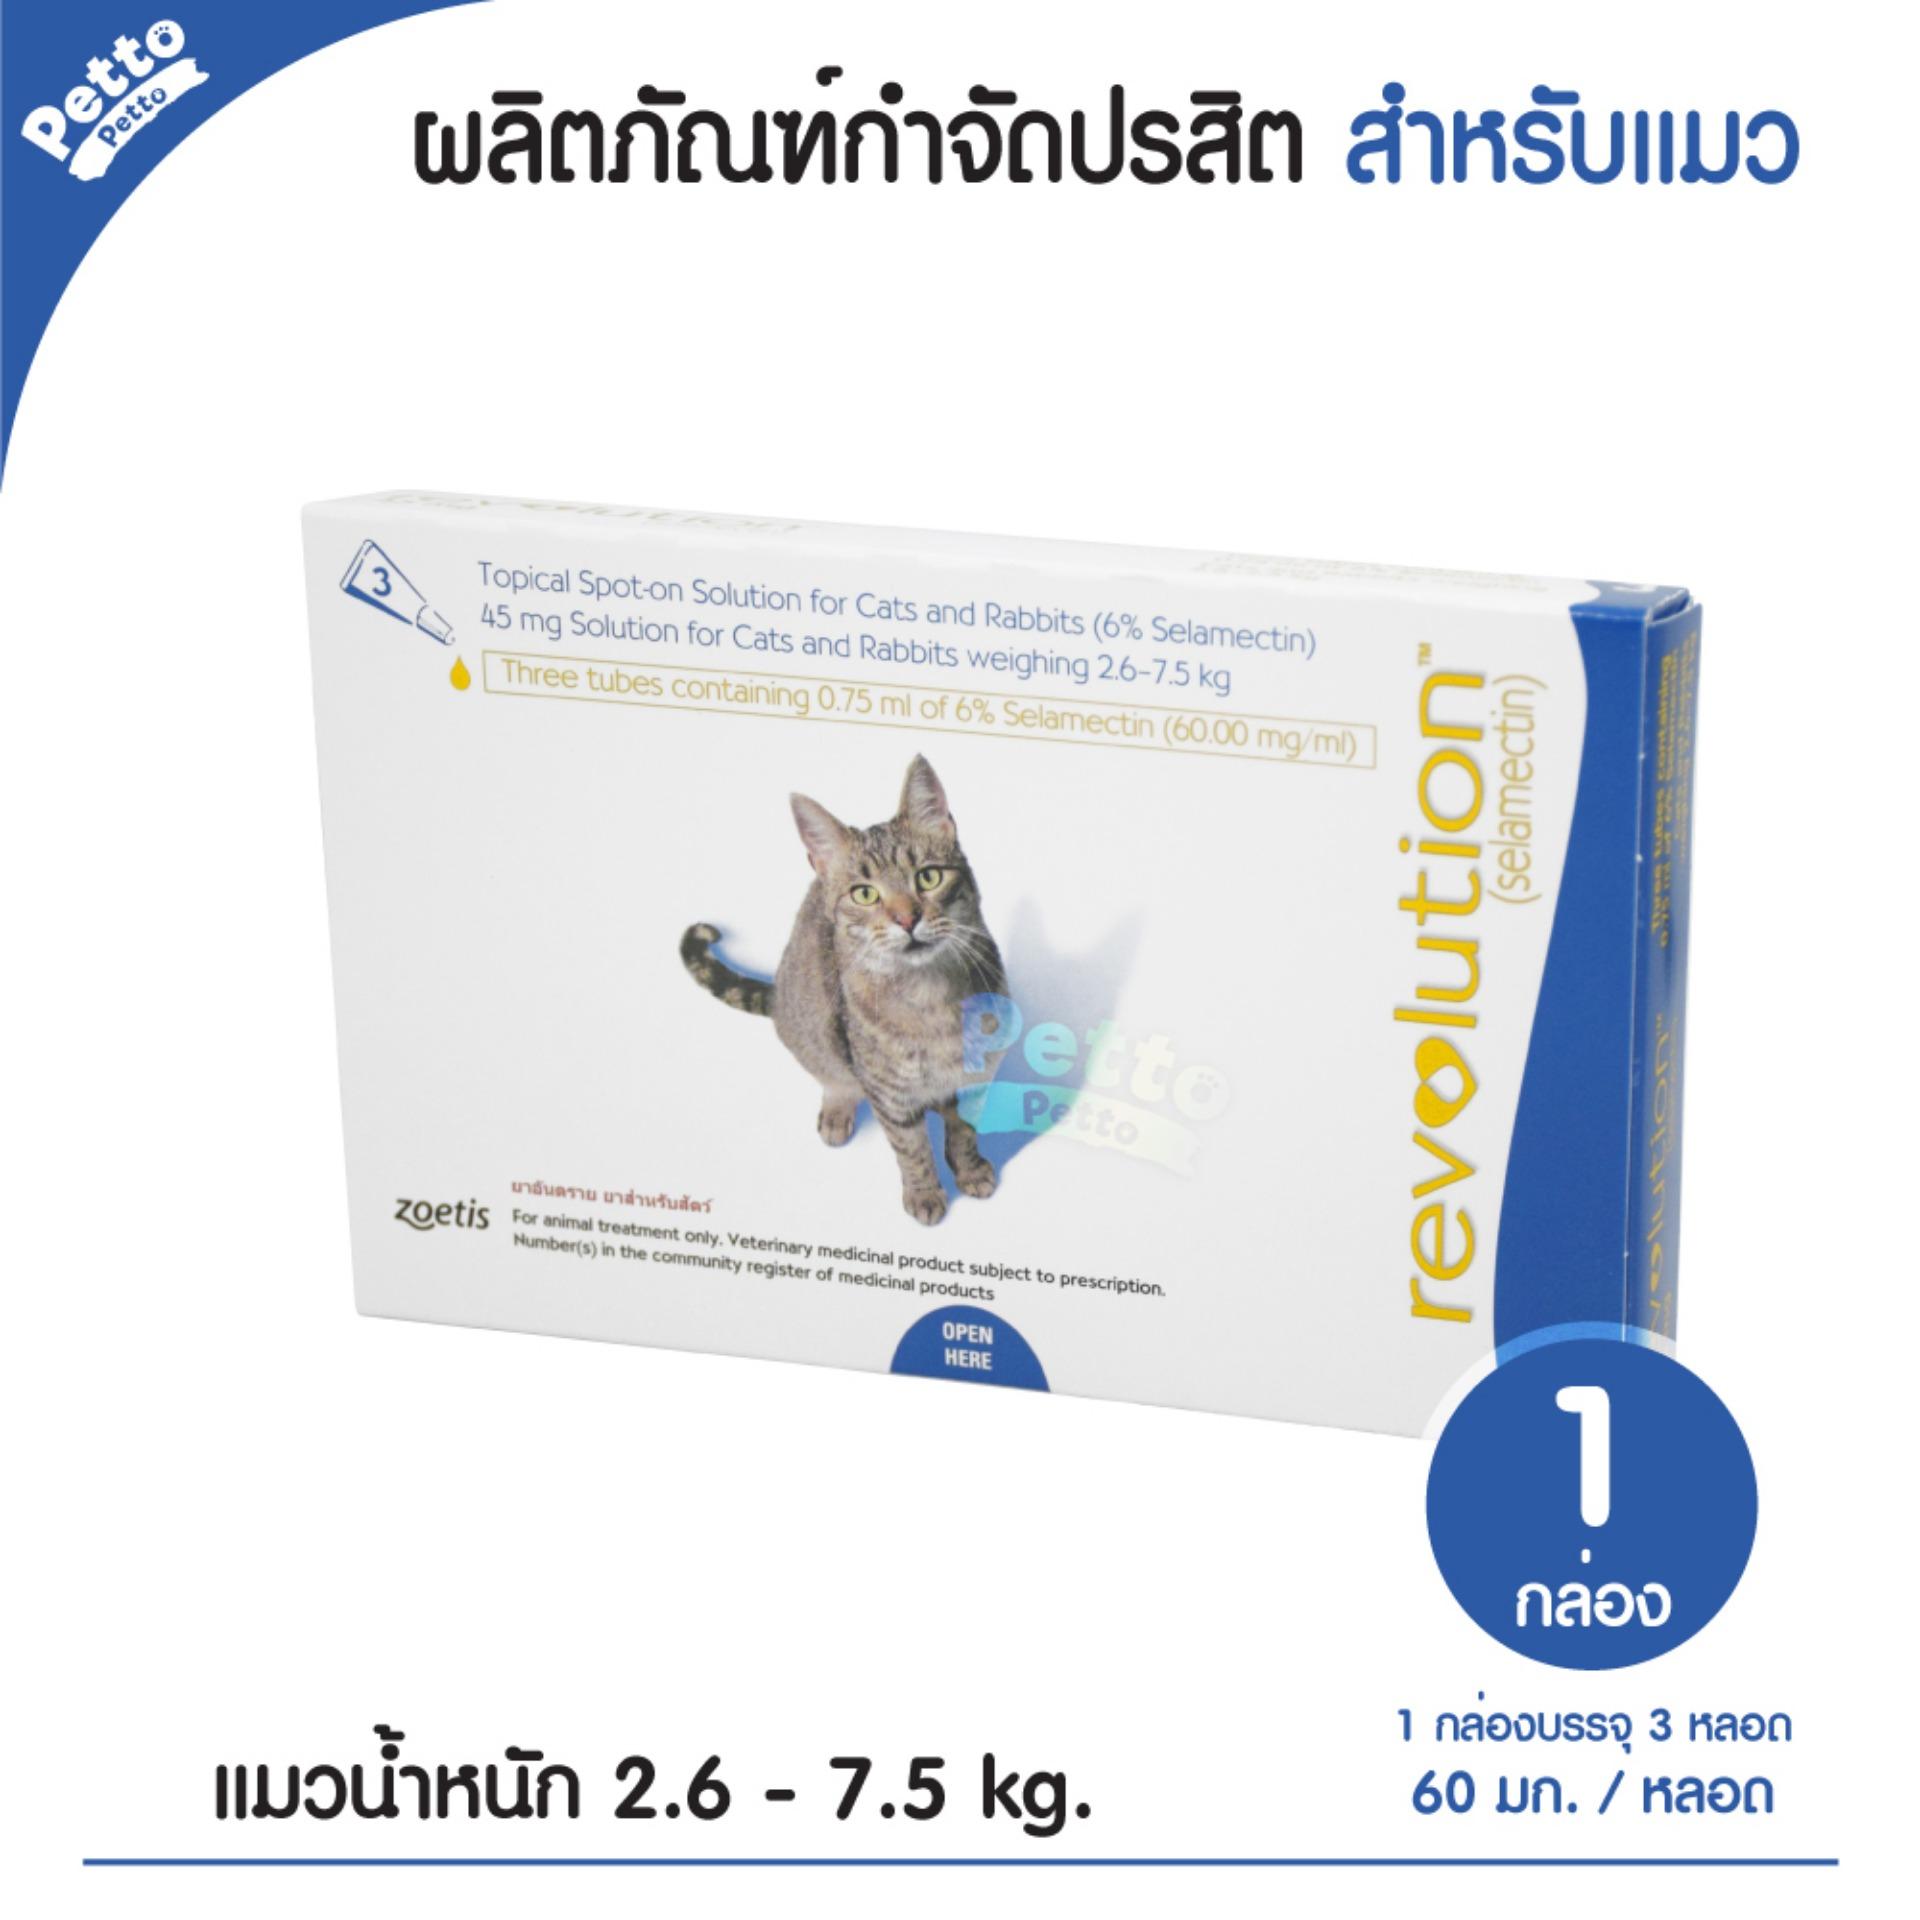 เรฟโว ลูชั่น ยาหยอดกำจัดเห็บ หมัด แมว น้ำหนัก 2.6 - 7.5 กก. (1 กล่อง 3 หลอด)